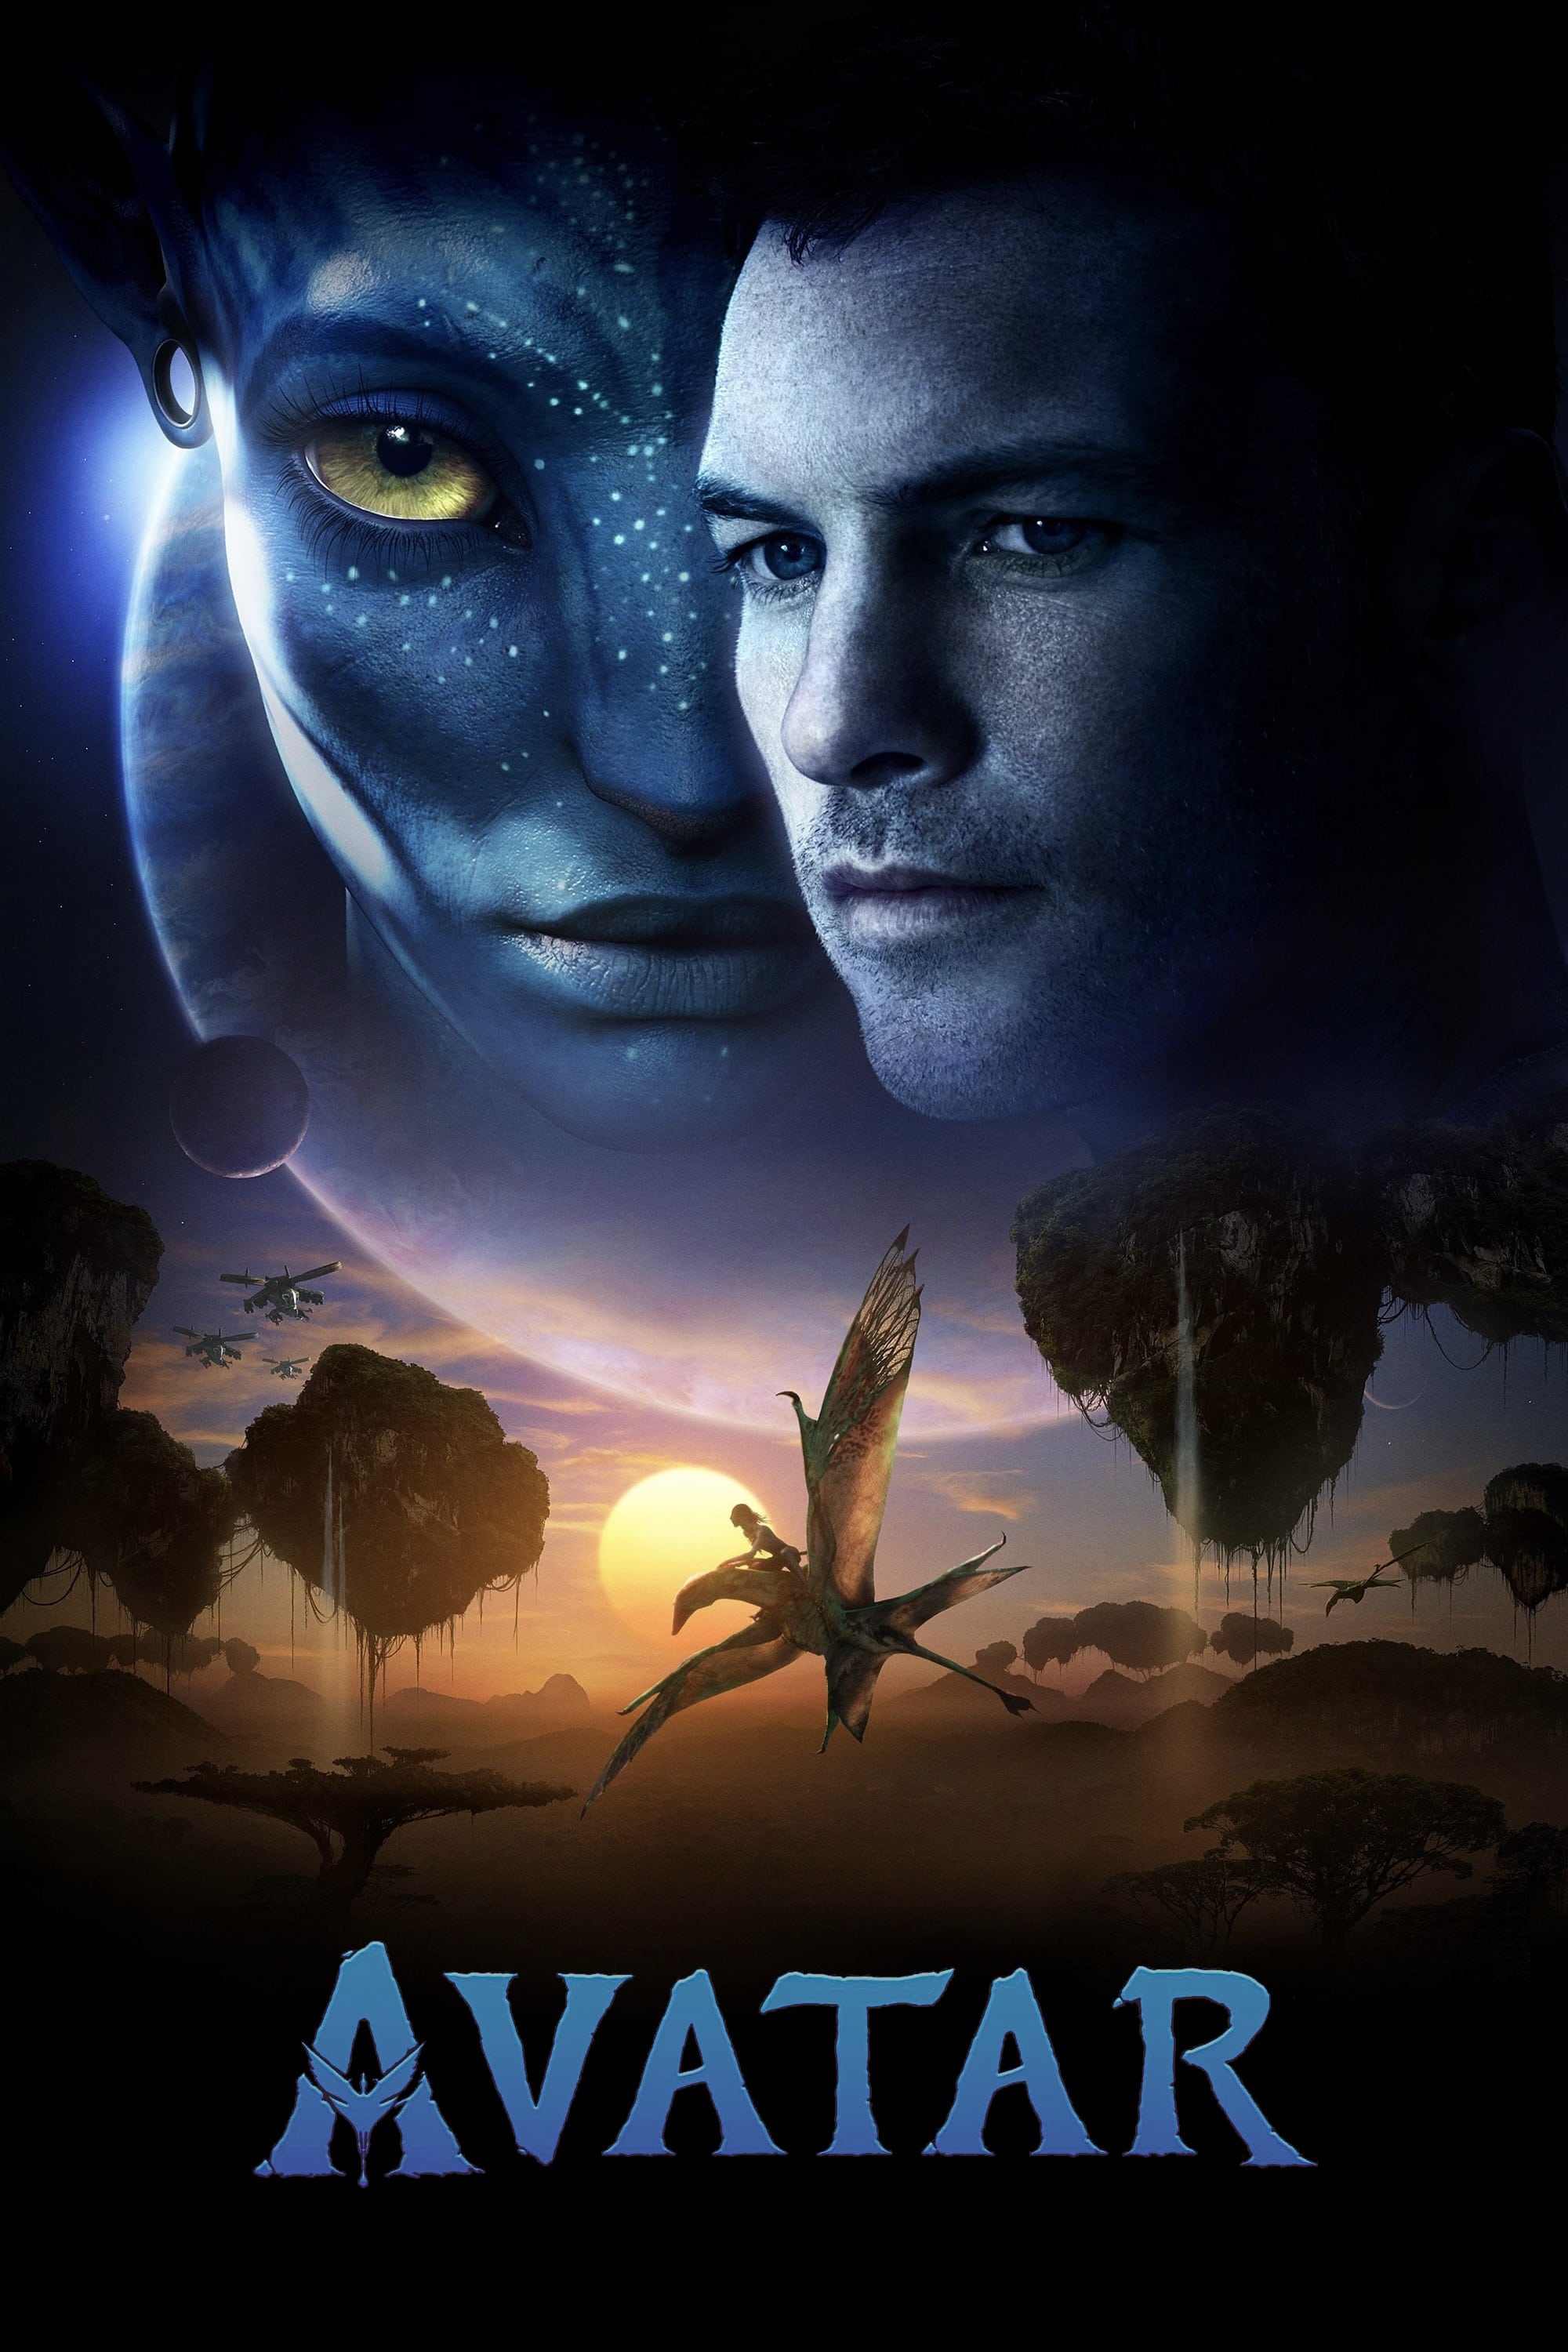 Avatar (2009)